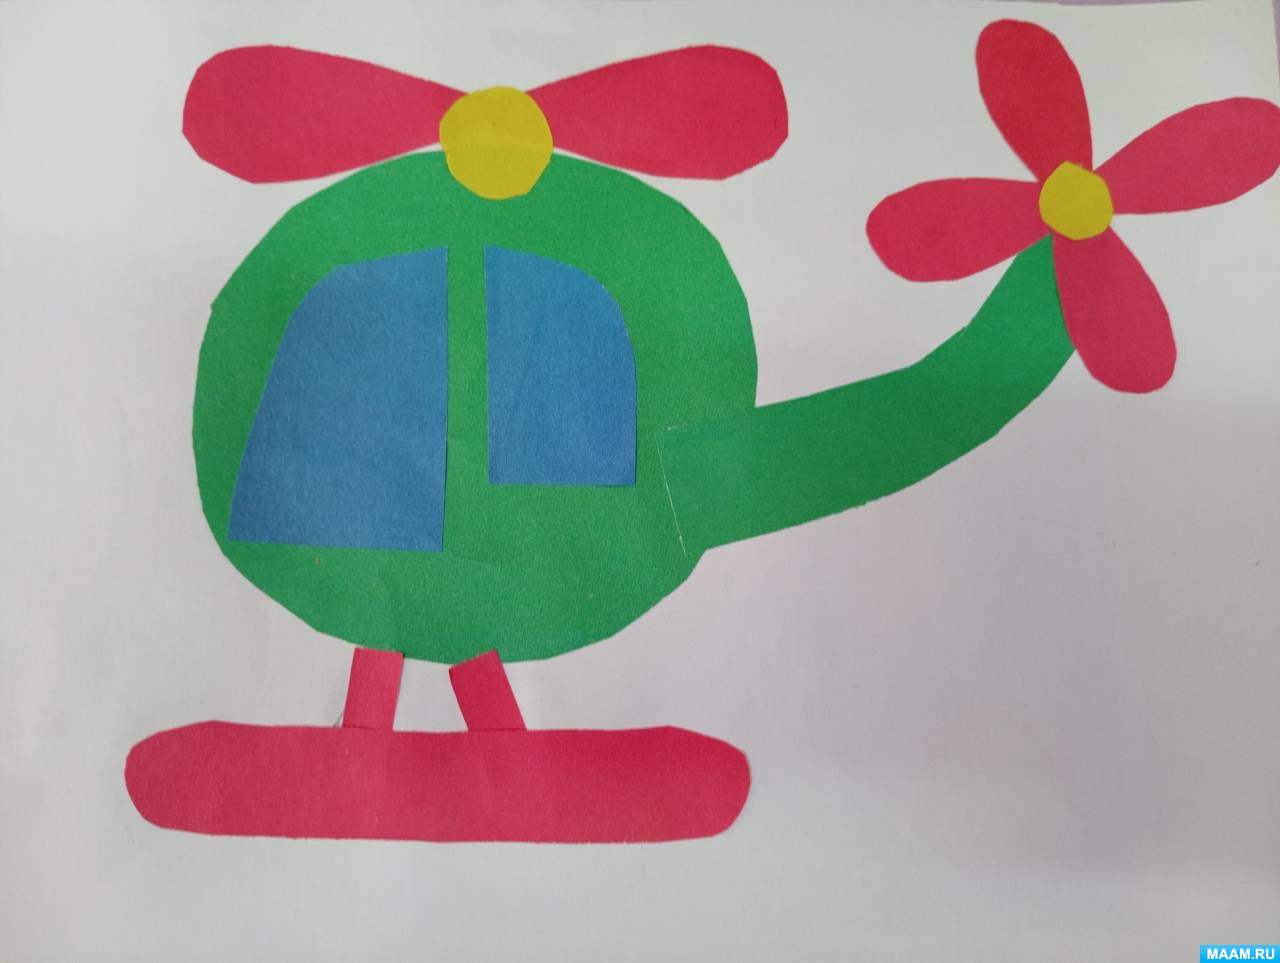 Объемная аппликация из цветной бумаги для детей от 5 лет. Самолеты